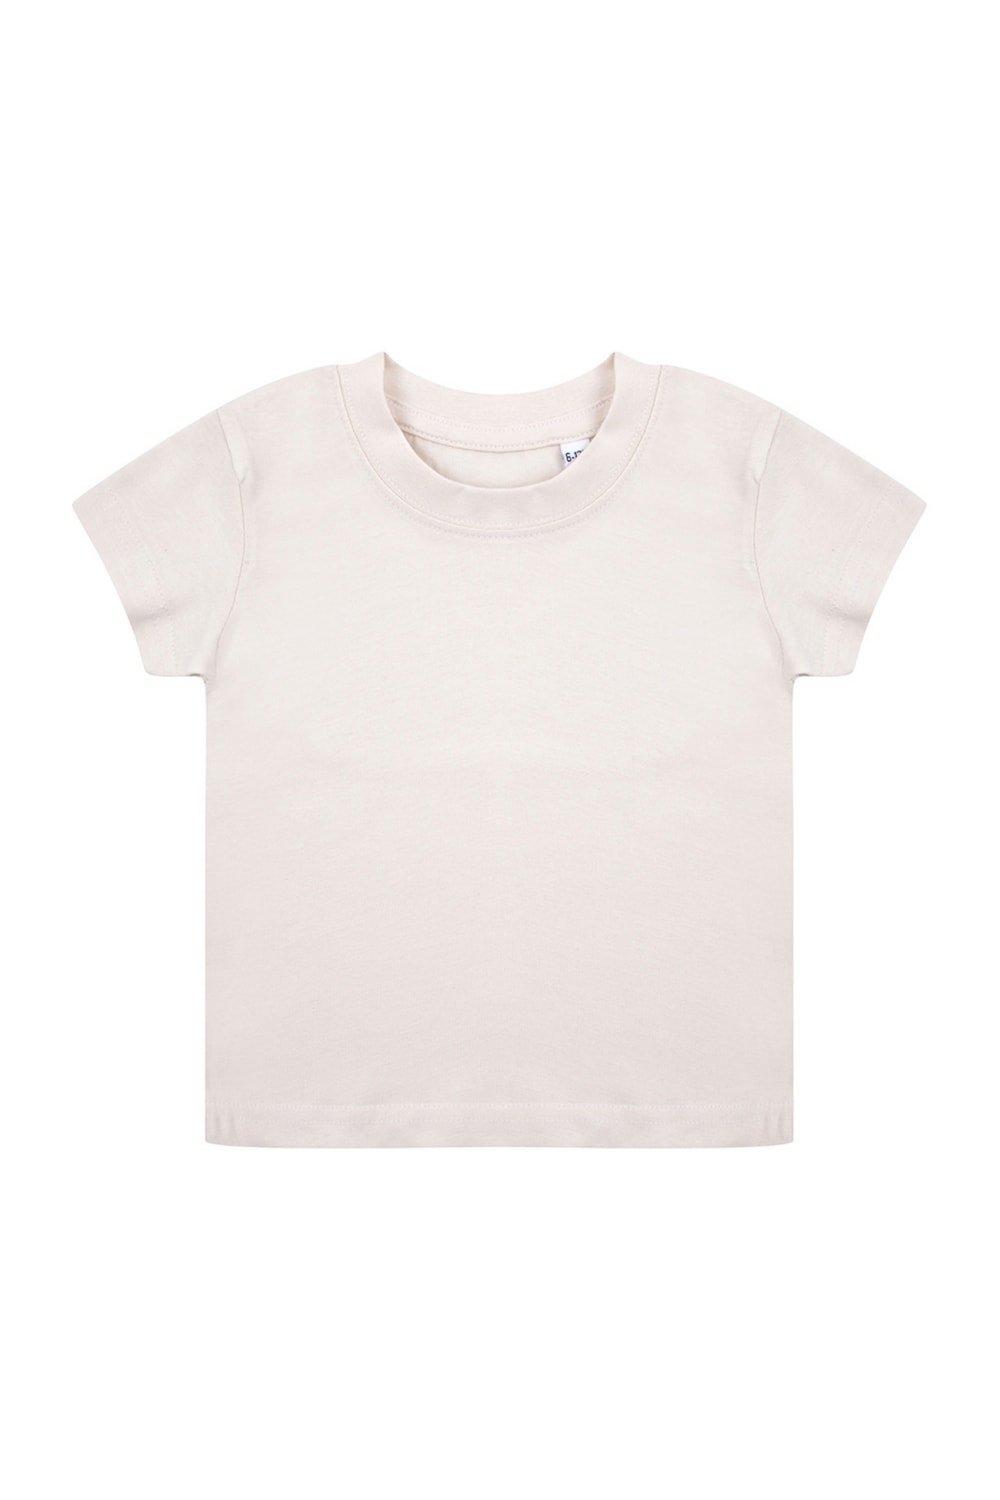 Органическая футболка Larkwood, натуральный комплект для девочек pelican gfad1017 q р 3 6 мес 62 68см